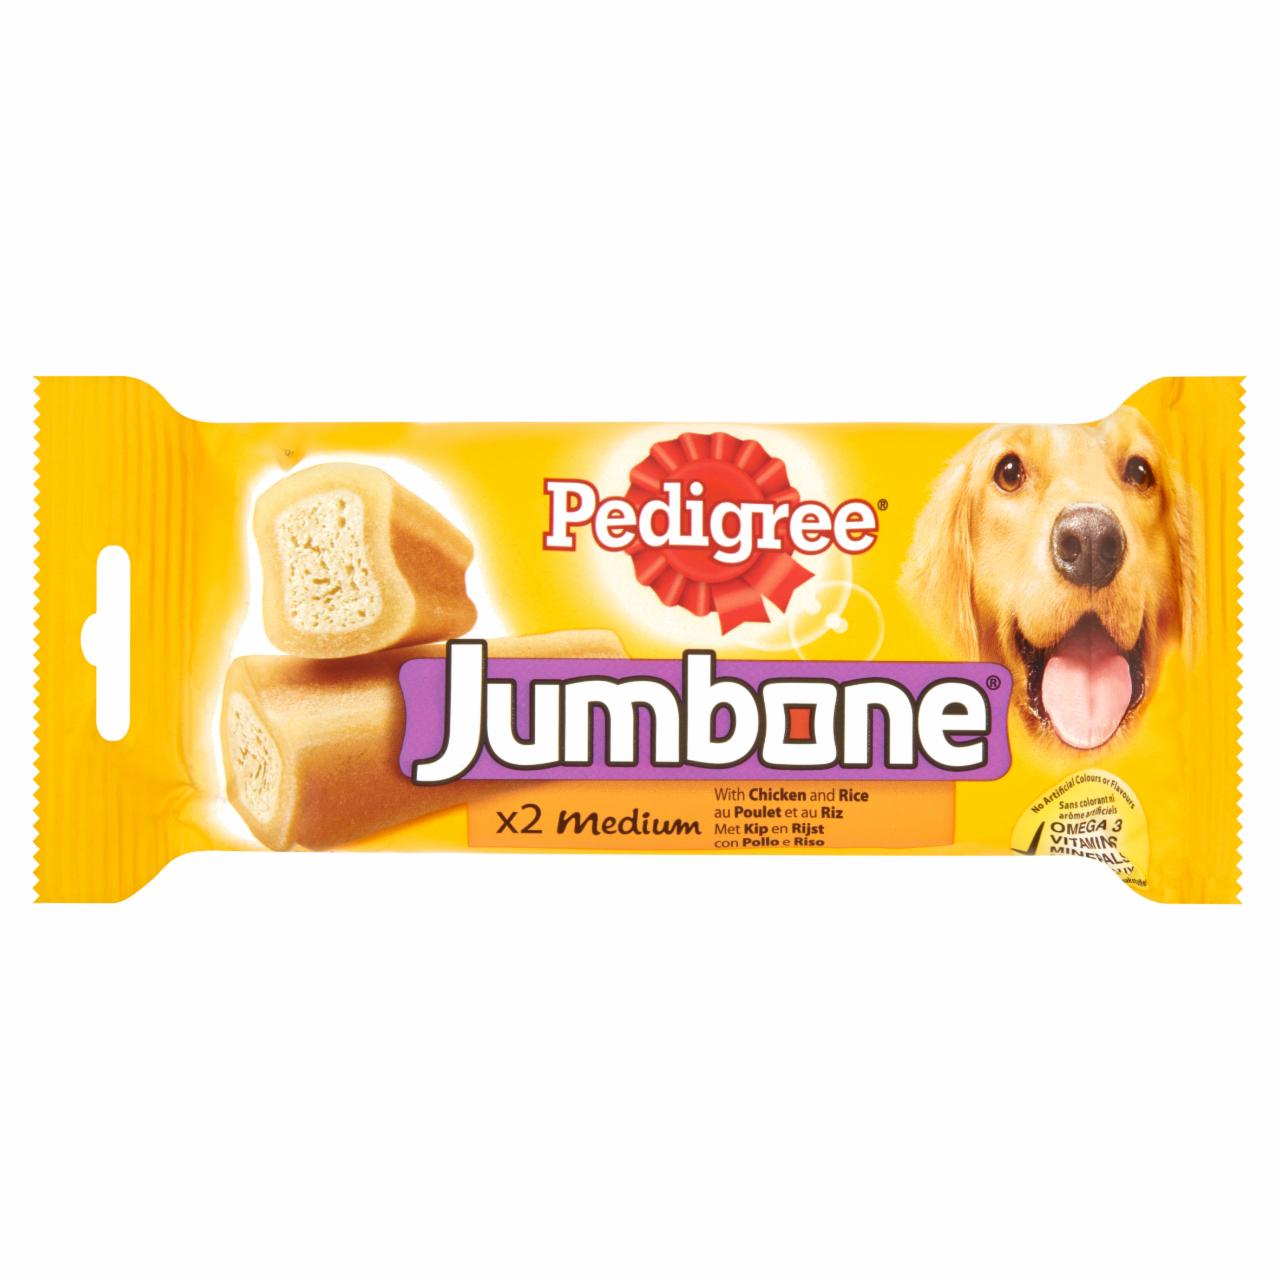 Képek - Pedigree Jumbone Medium kiegészítő állateledel csirkével és rizzsel felnőtt kutyáknak 2 db 200 g